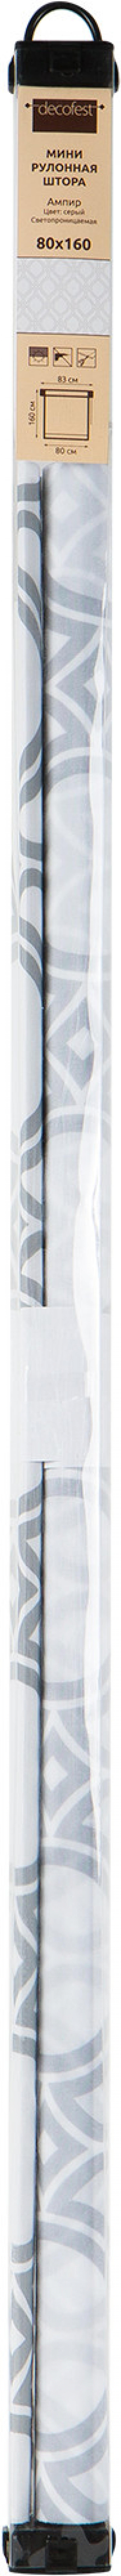 Штора рулонная «Ампир», 80х160 см, цвет серый